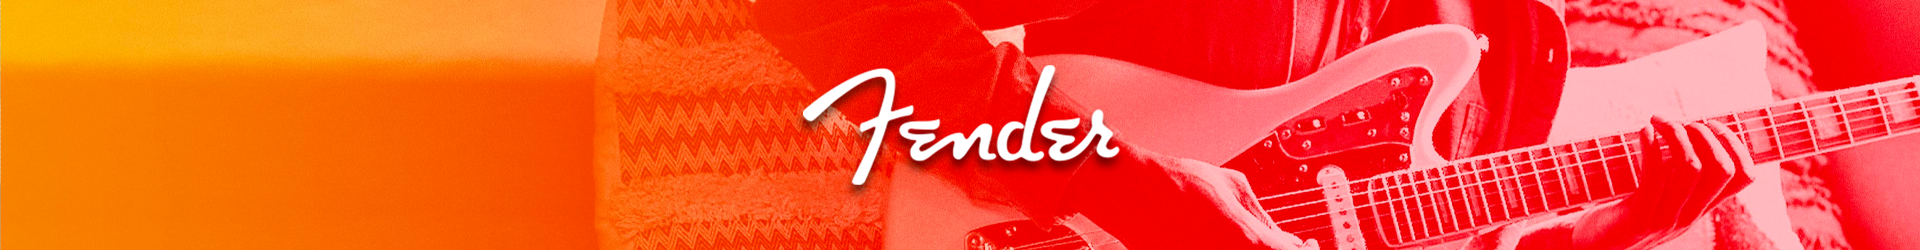 Fender Brand slide